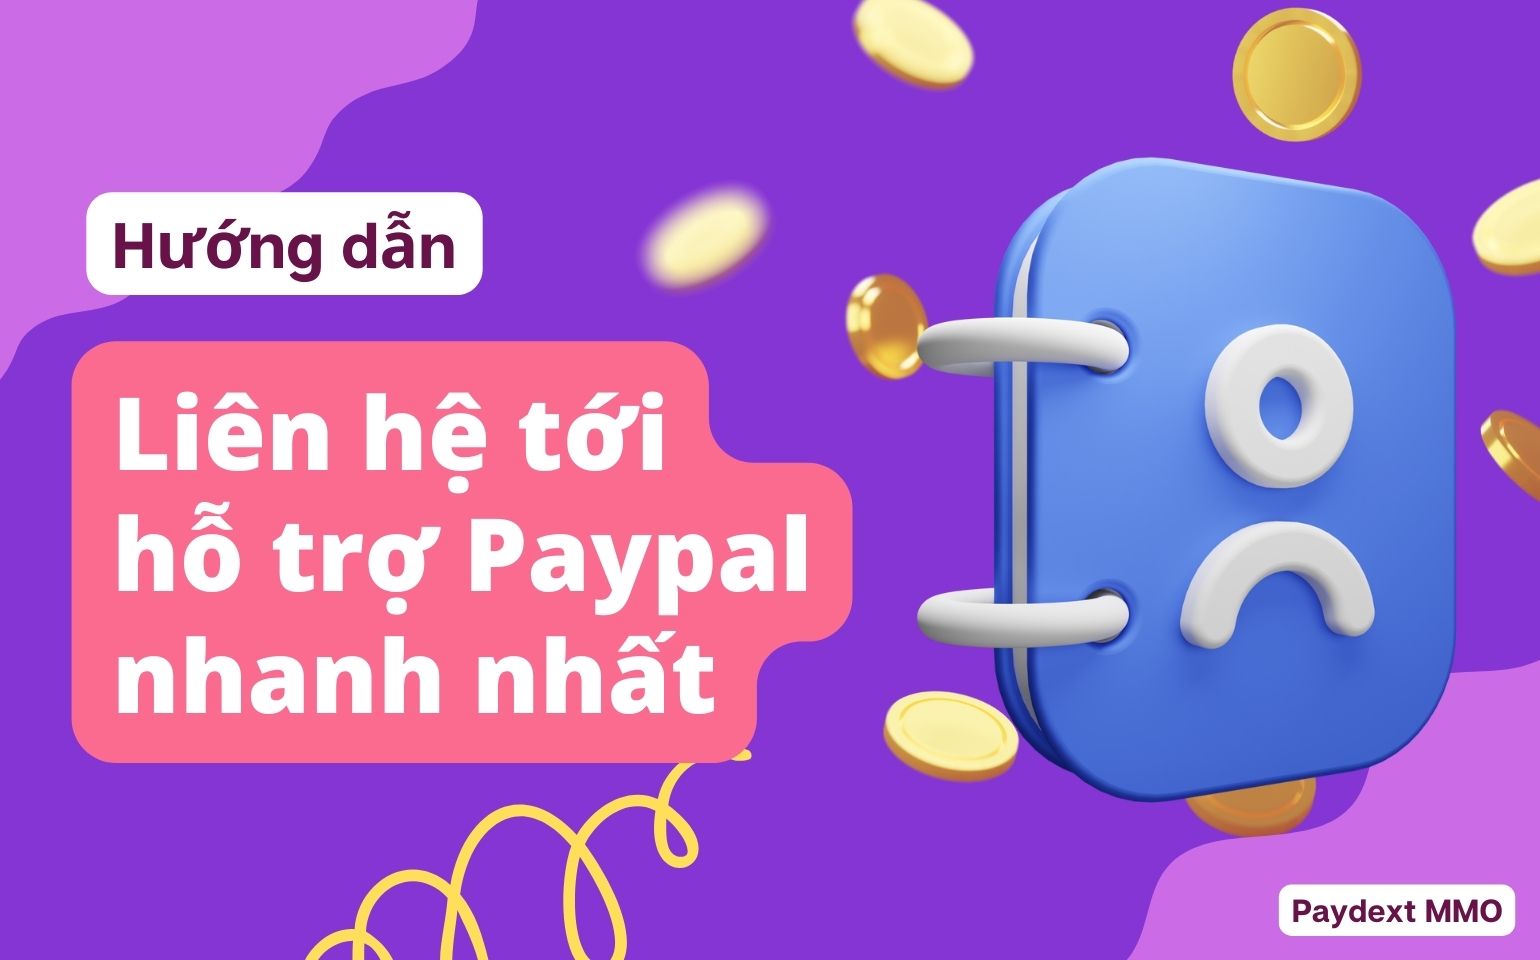 Liên hệ hỗ trợ Paypal Việt Nam